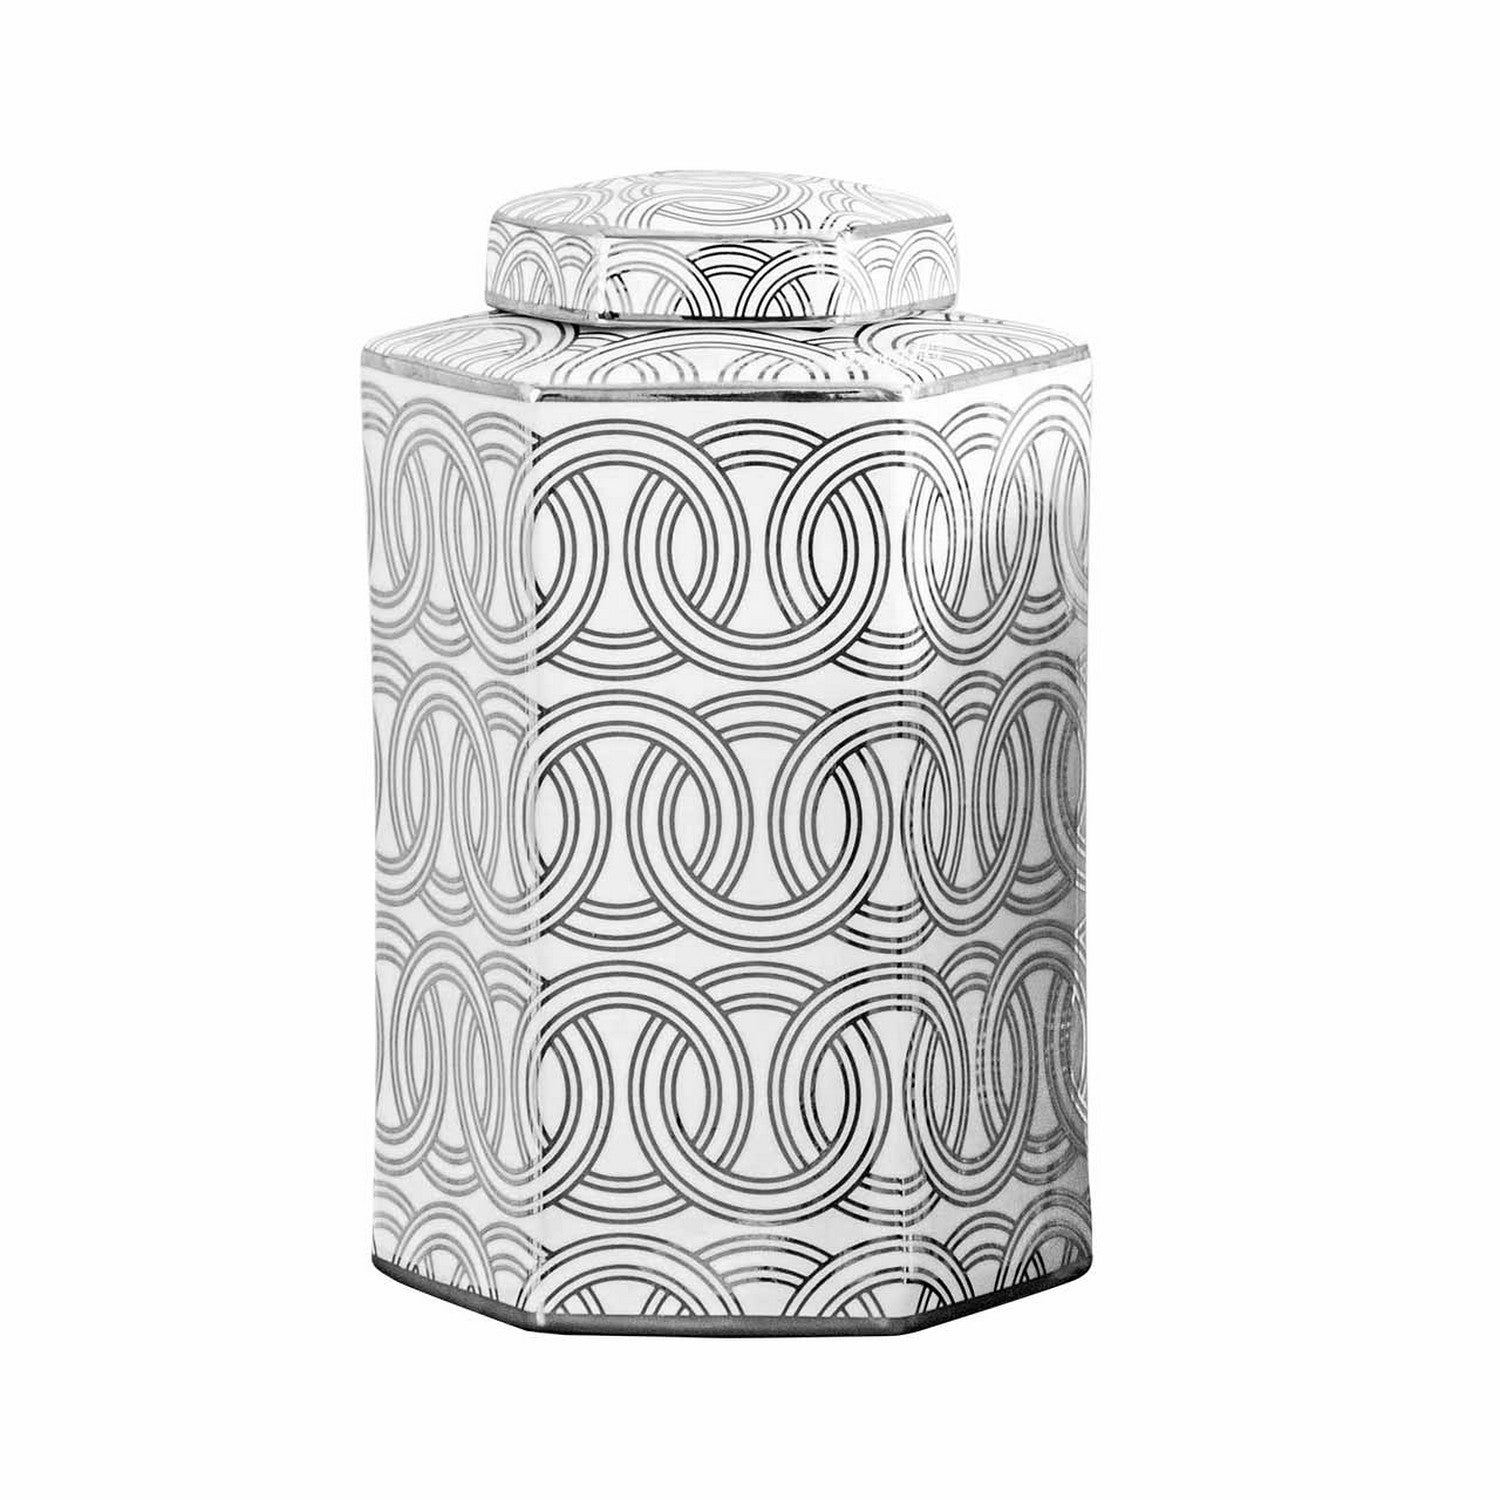 30cm Black & White Circles Ginger Jar